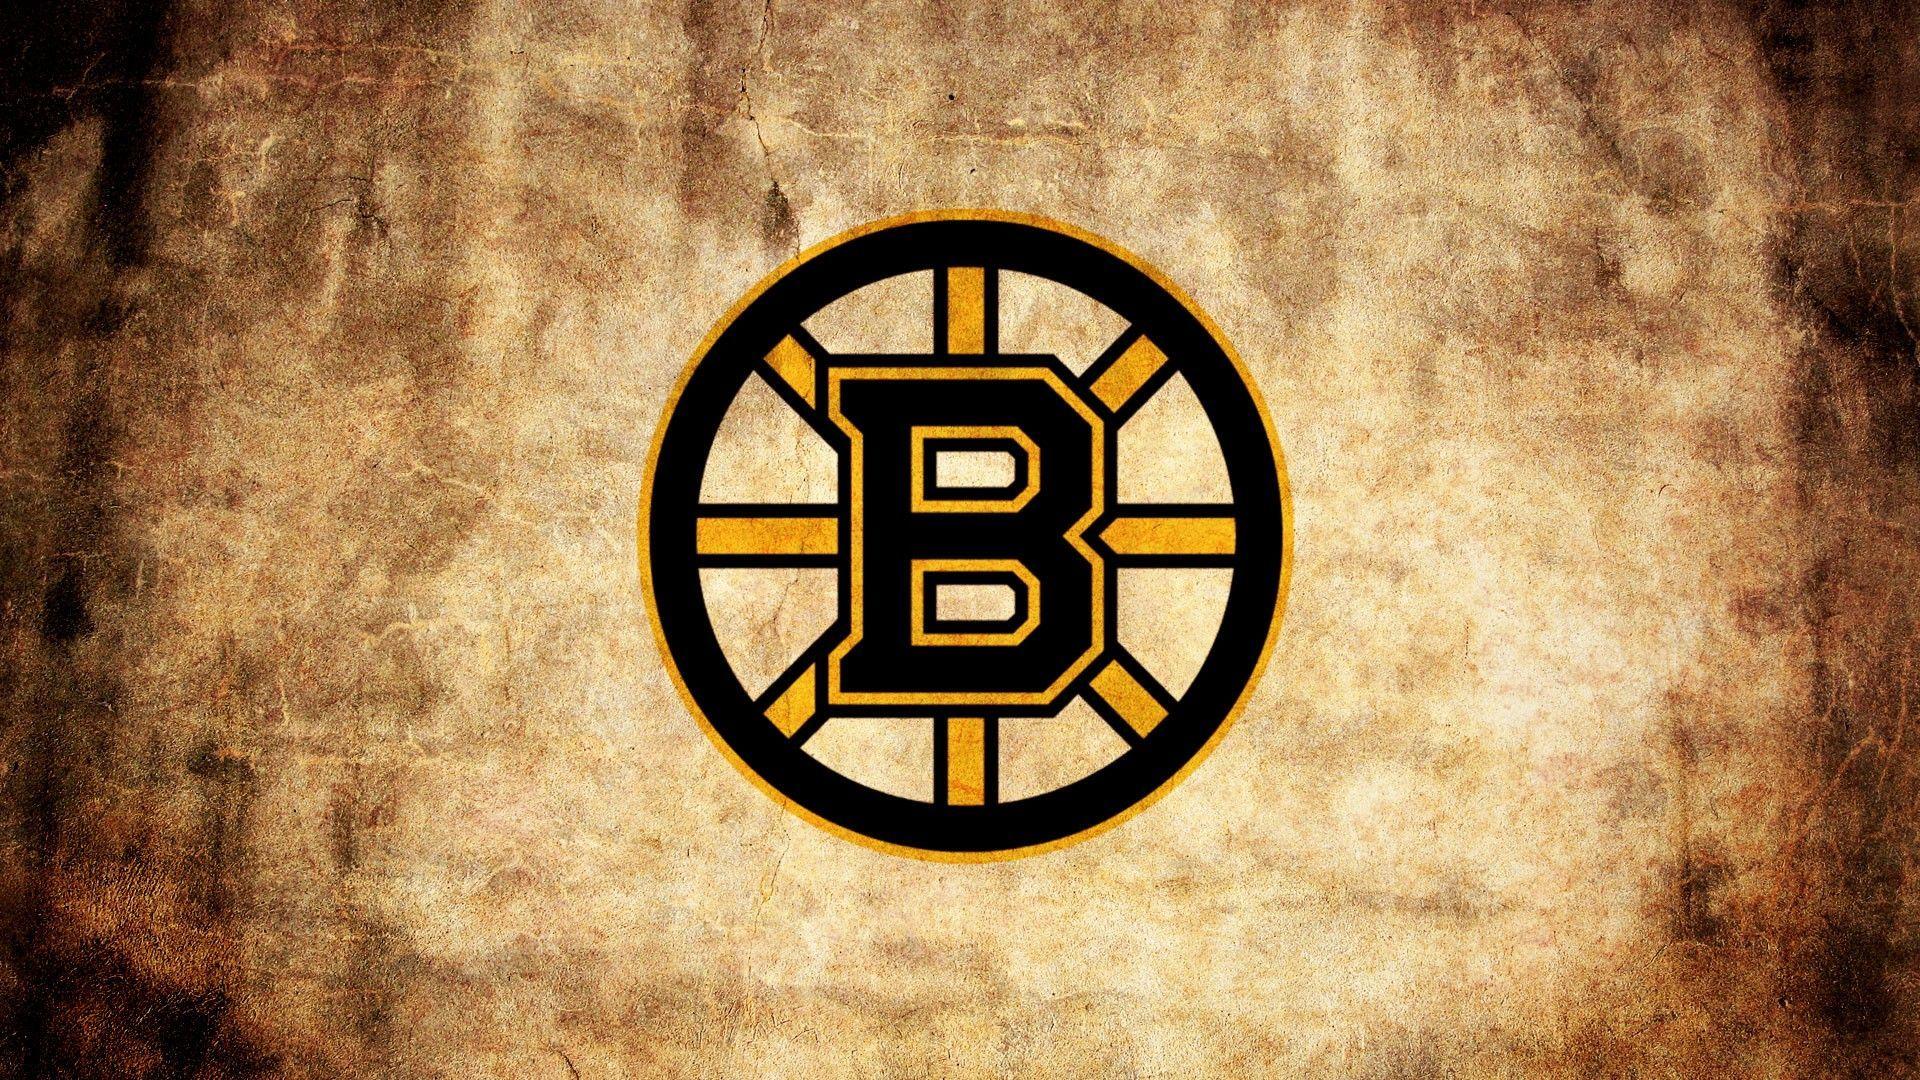 Boston Sports Logos Wallpaper